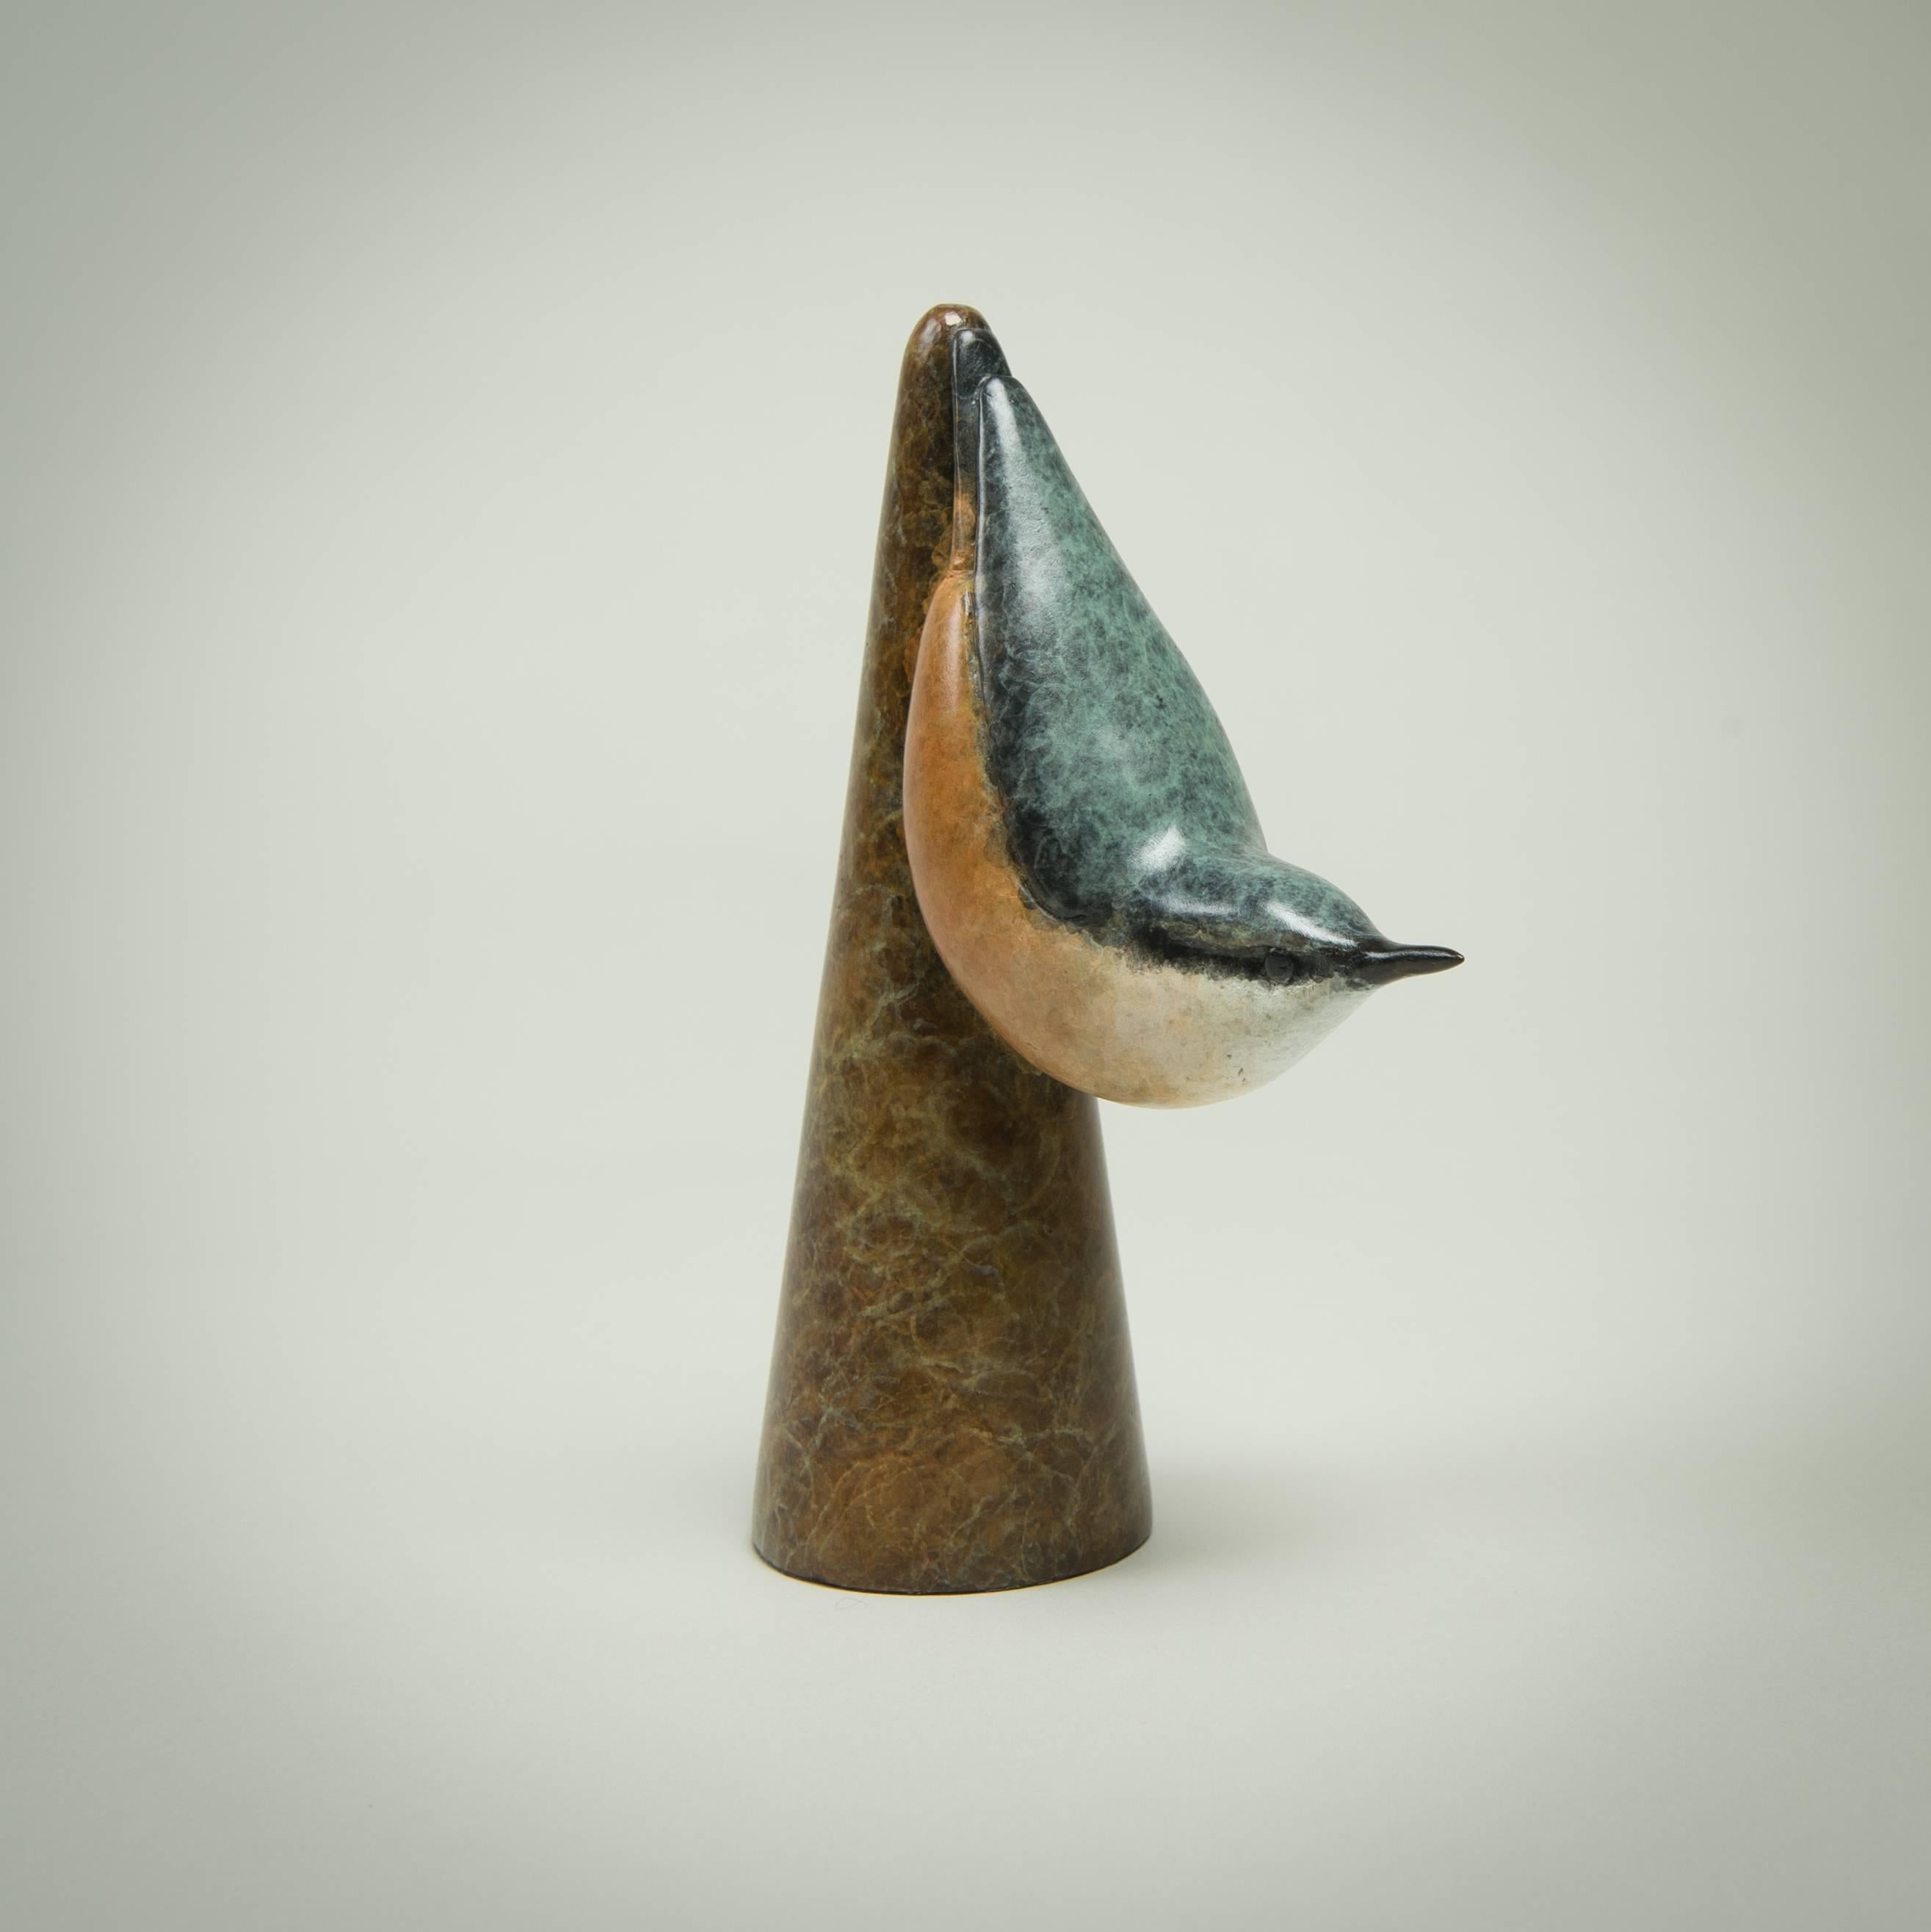 Richard Smith b.1955 Still-Life Sculpture - 'Nuthatch' Contemporary Bronze Bird Sculpture by Wildlife Artist Richard Smith